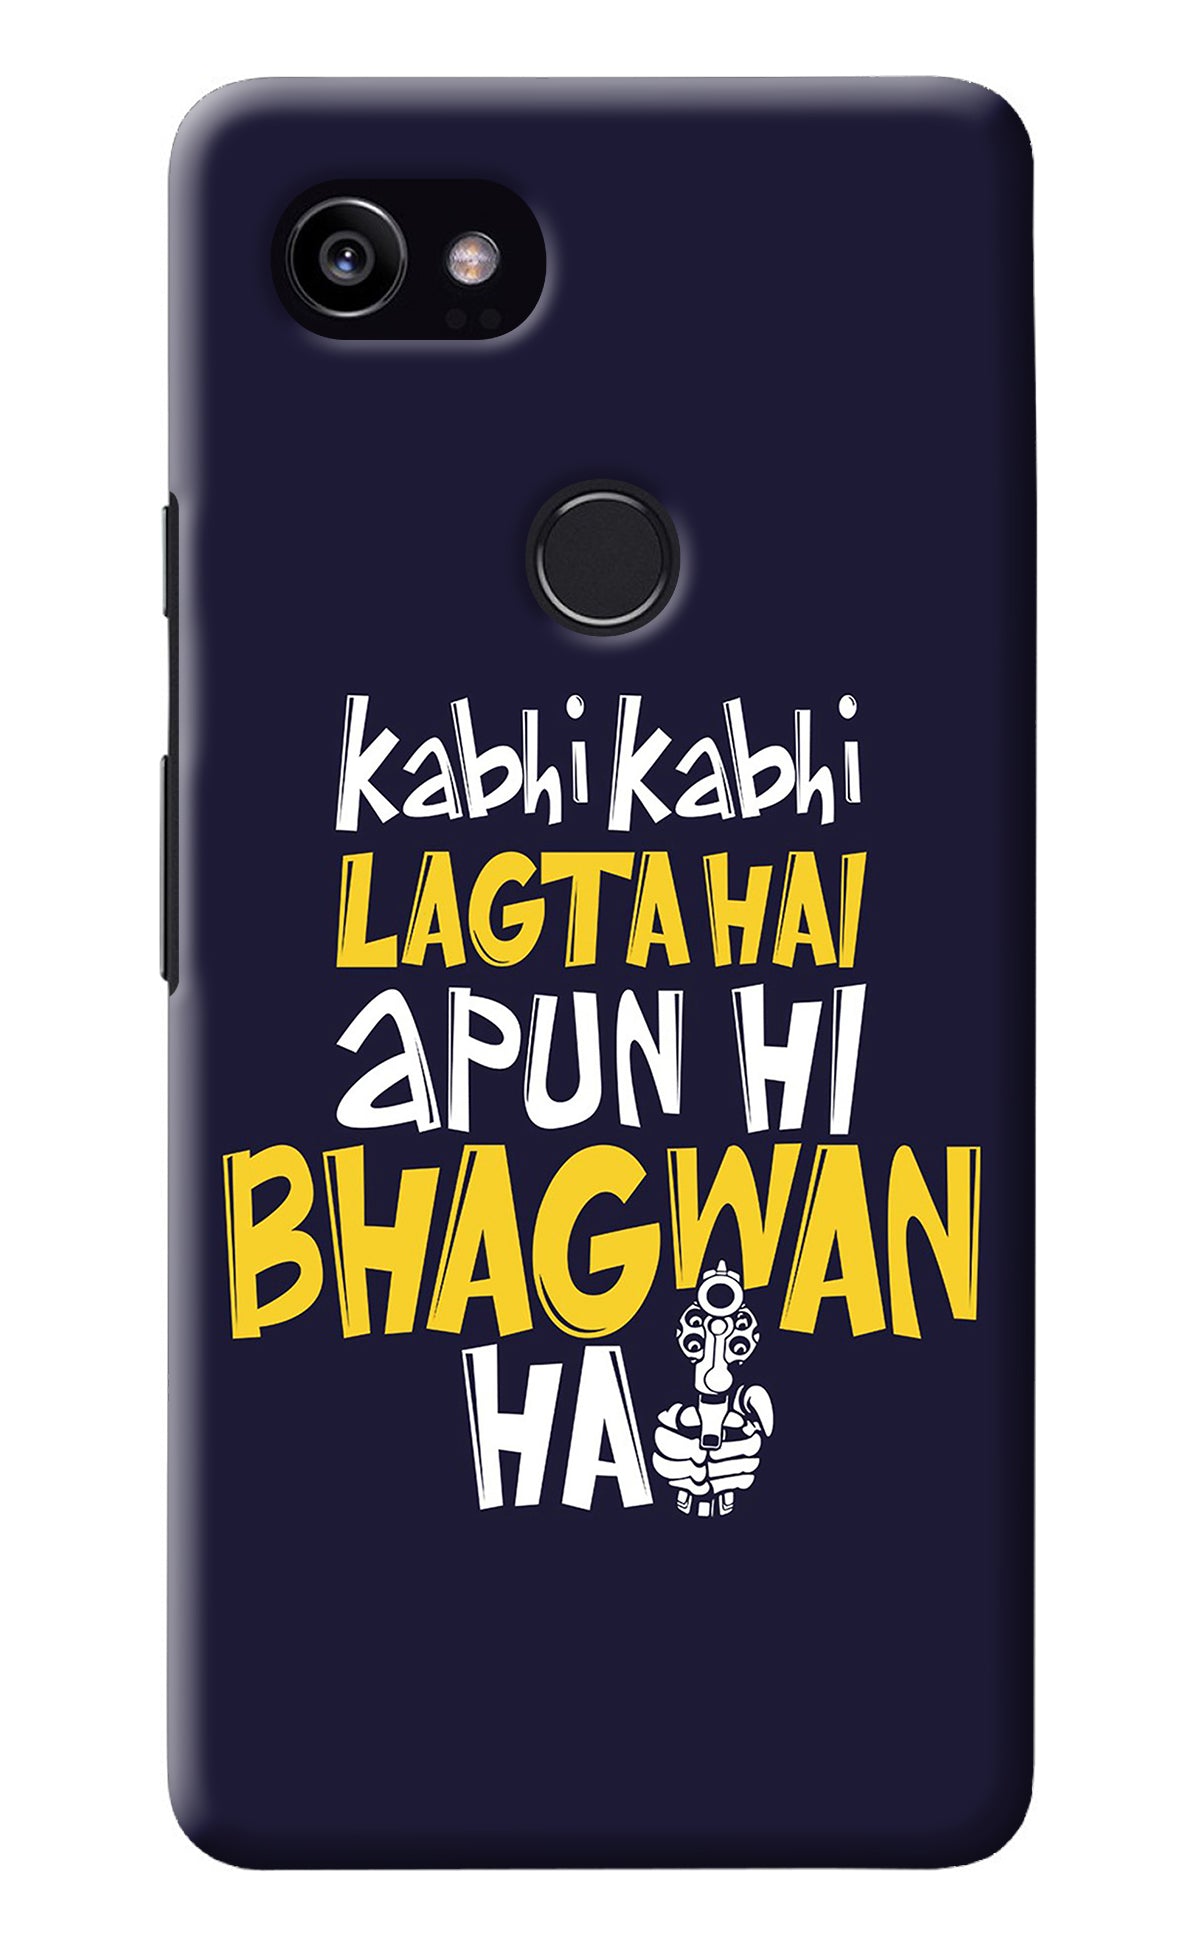 Kabhi Kabhi Lagta Hai Apun Hi Bhagwan Hai Google Pixel 2 XL Back Cover